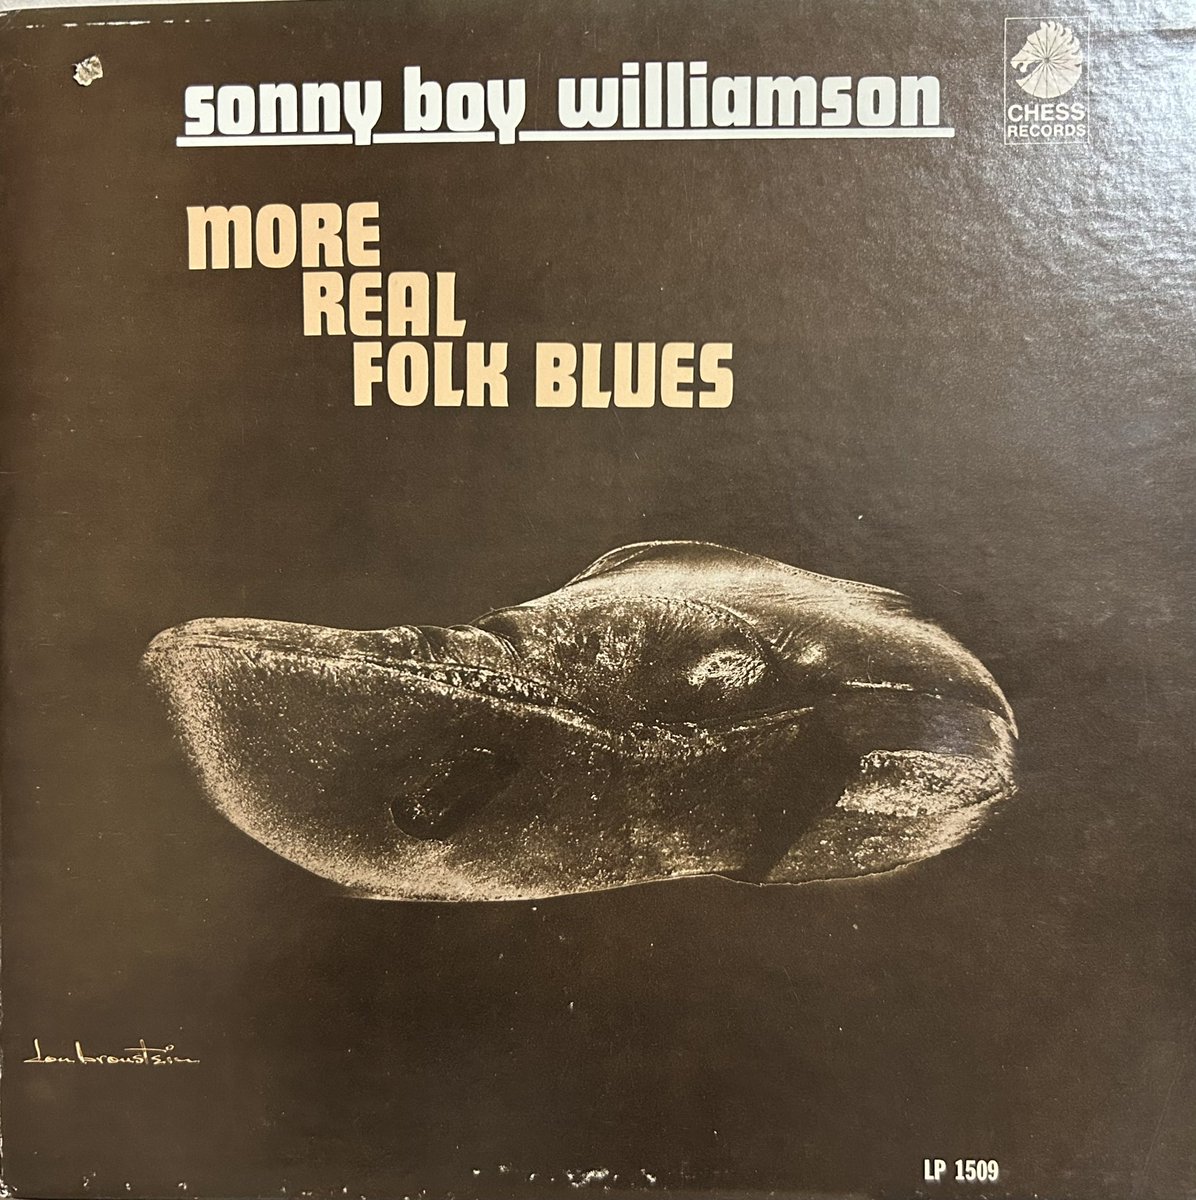 今日の1曲！
Sonny Boy Williamson,
Help Me.
youtube.com/watch?v=ASlVJa…
#blues
#bluesharp
#chessrecords 
#sonnyboywilliamson